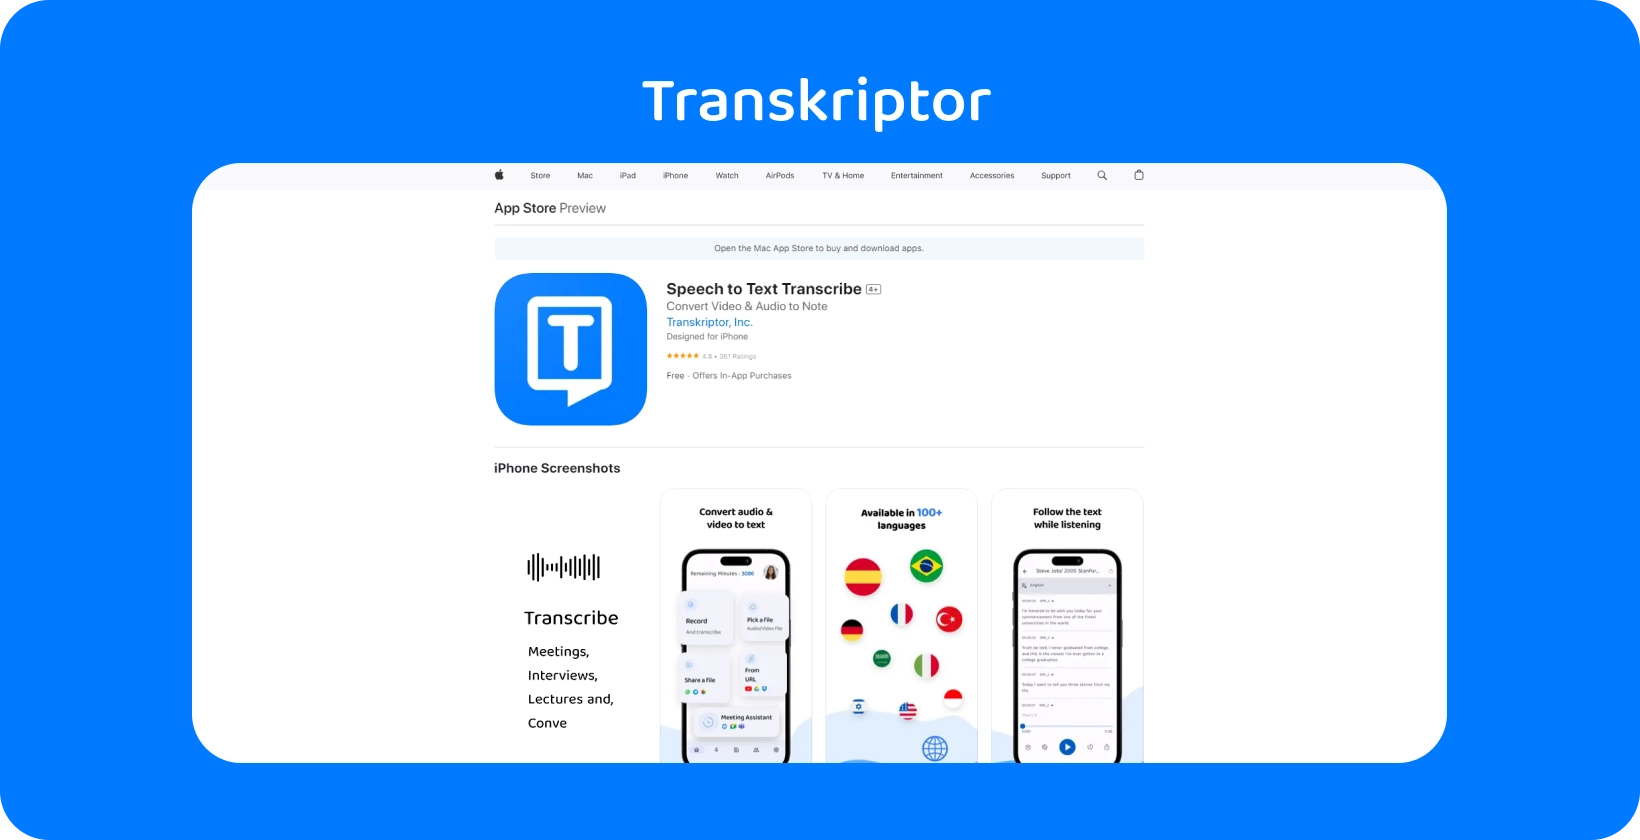 La aplicación Transkriptor se muestra en iPhone, destacando sus capacidades de transcripción de voz a texto.